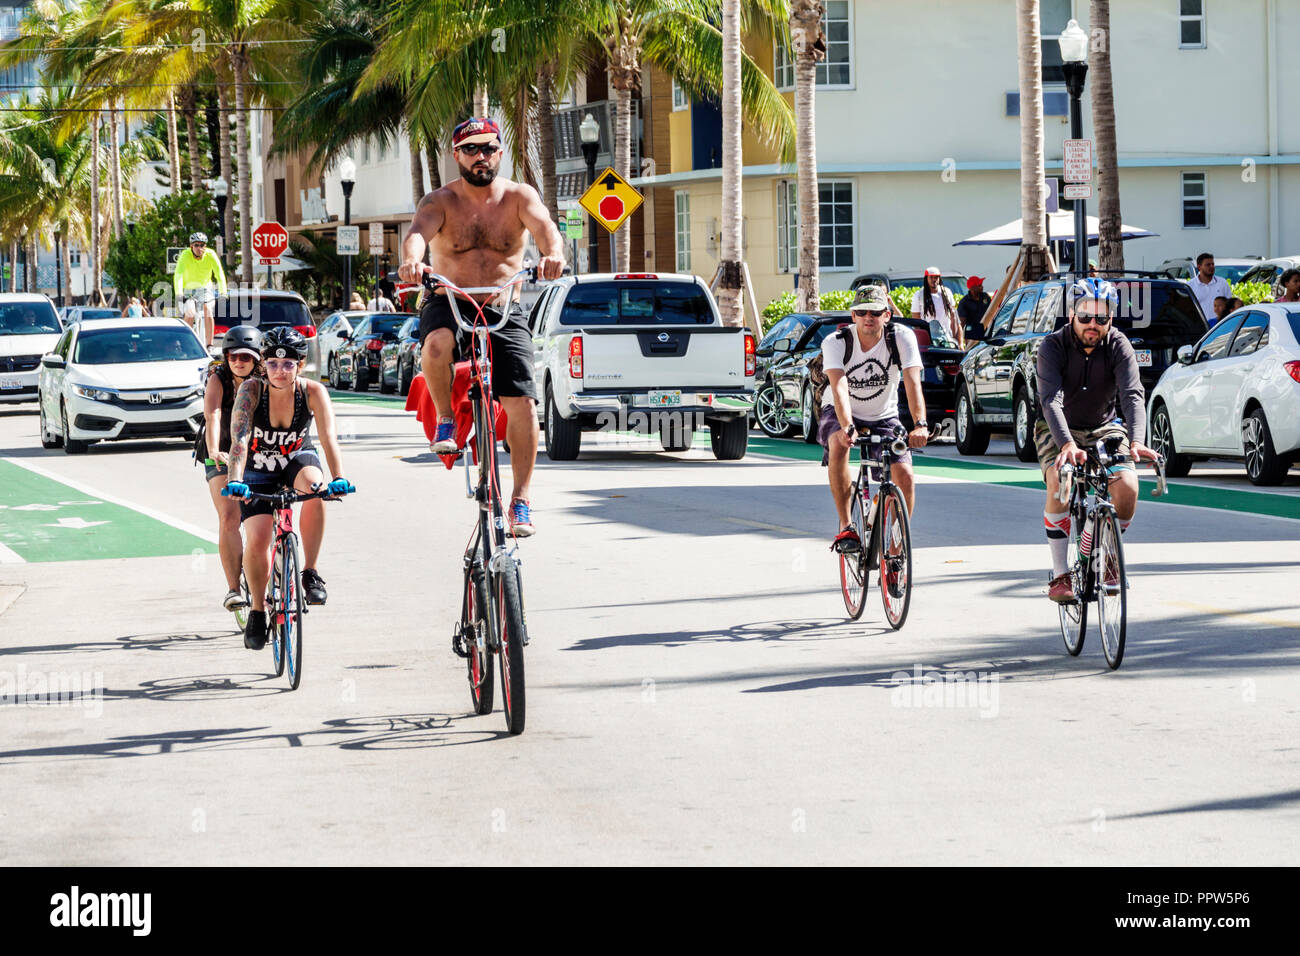 Miami Beach Florida, vélos cavaliers, mutant de grands vélos, les visiteurs Voyage voyage touristique touristique repère culturel culture, vacances Banque D'Images